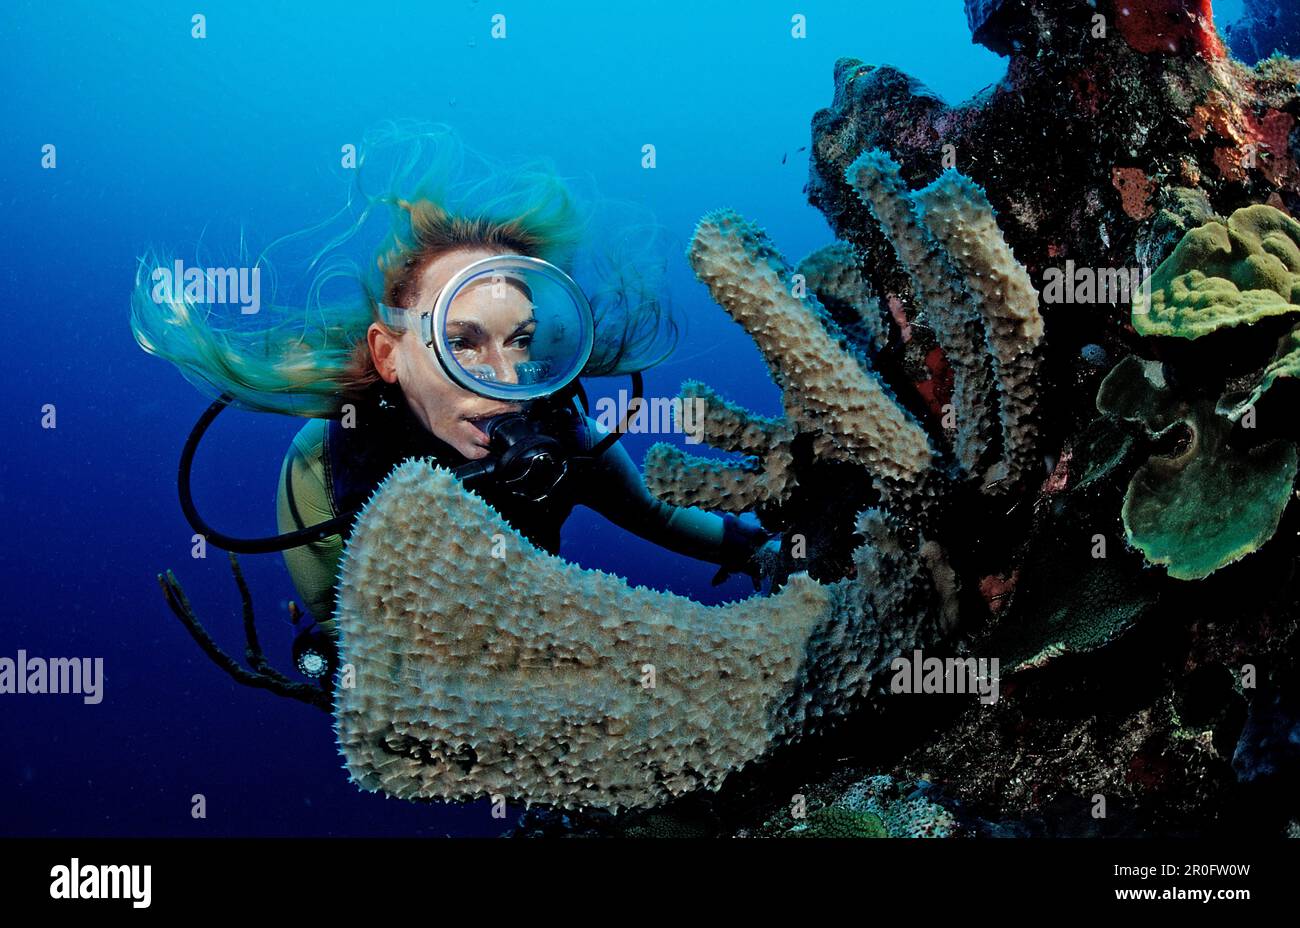 Plongée sous-marine et récif corallien, Sainte-Lucie, Antilles françaises, Mer des Caraïbes Banque D'Images